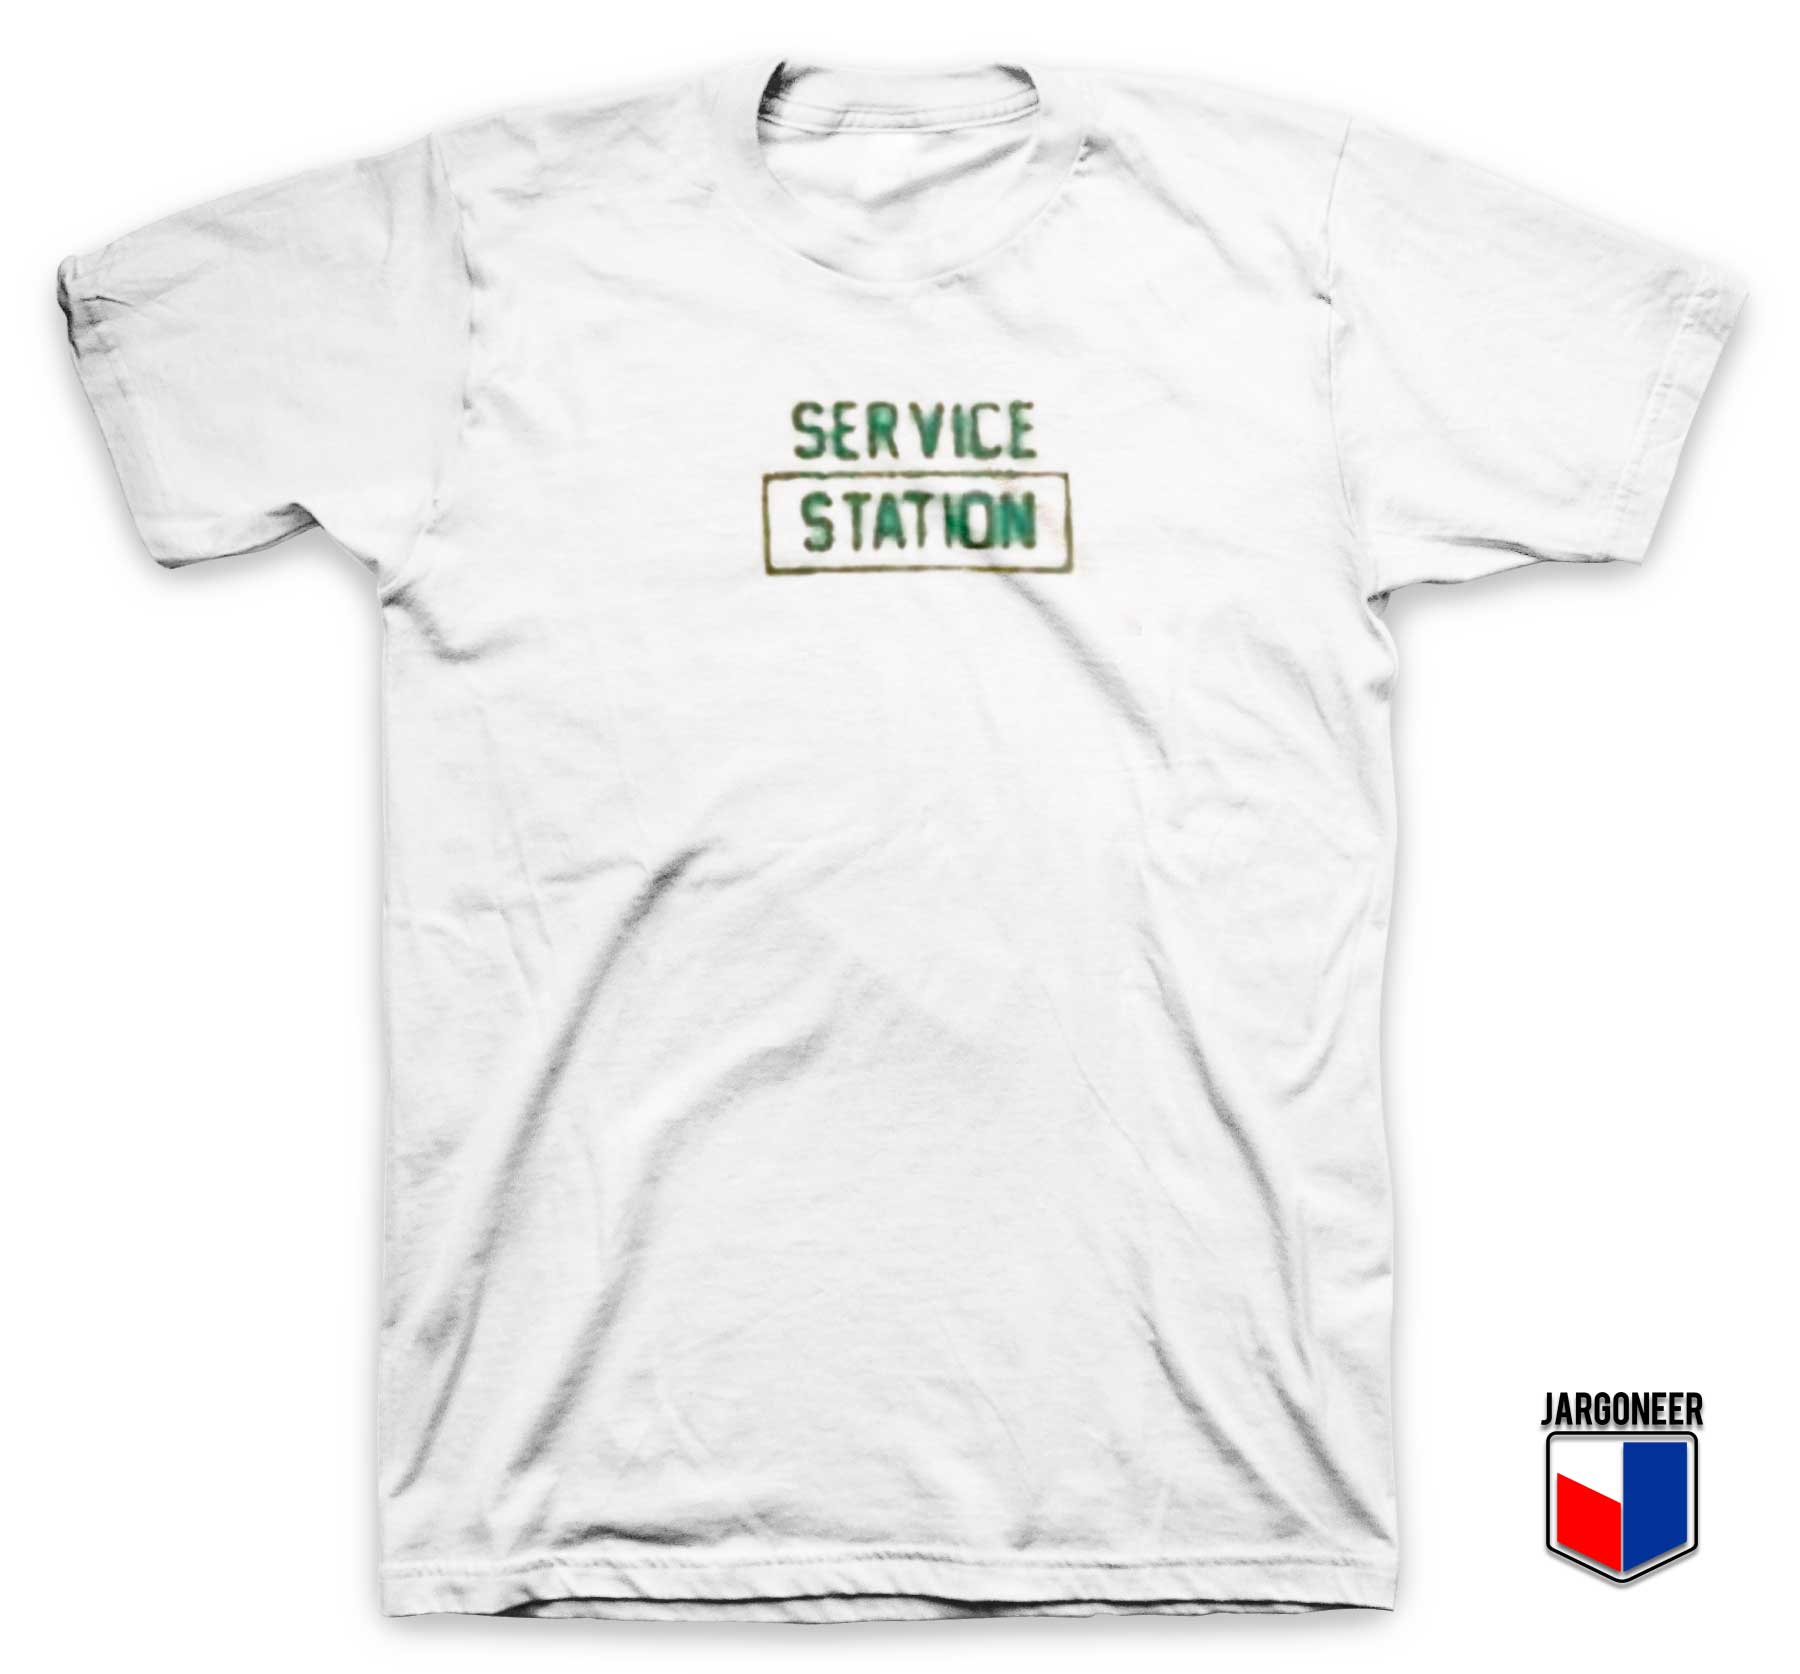 Service Station T Shirt - Shop Unique Graphic Cool Shirt Designs